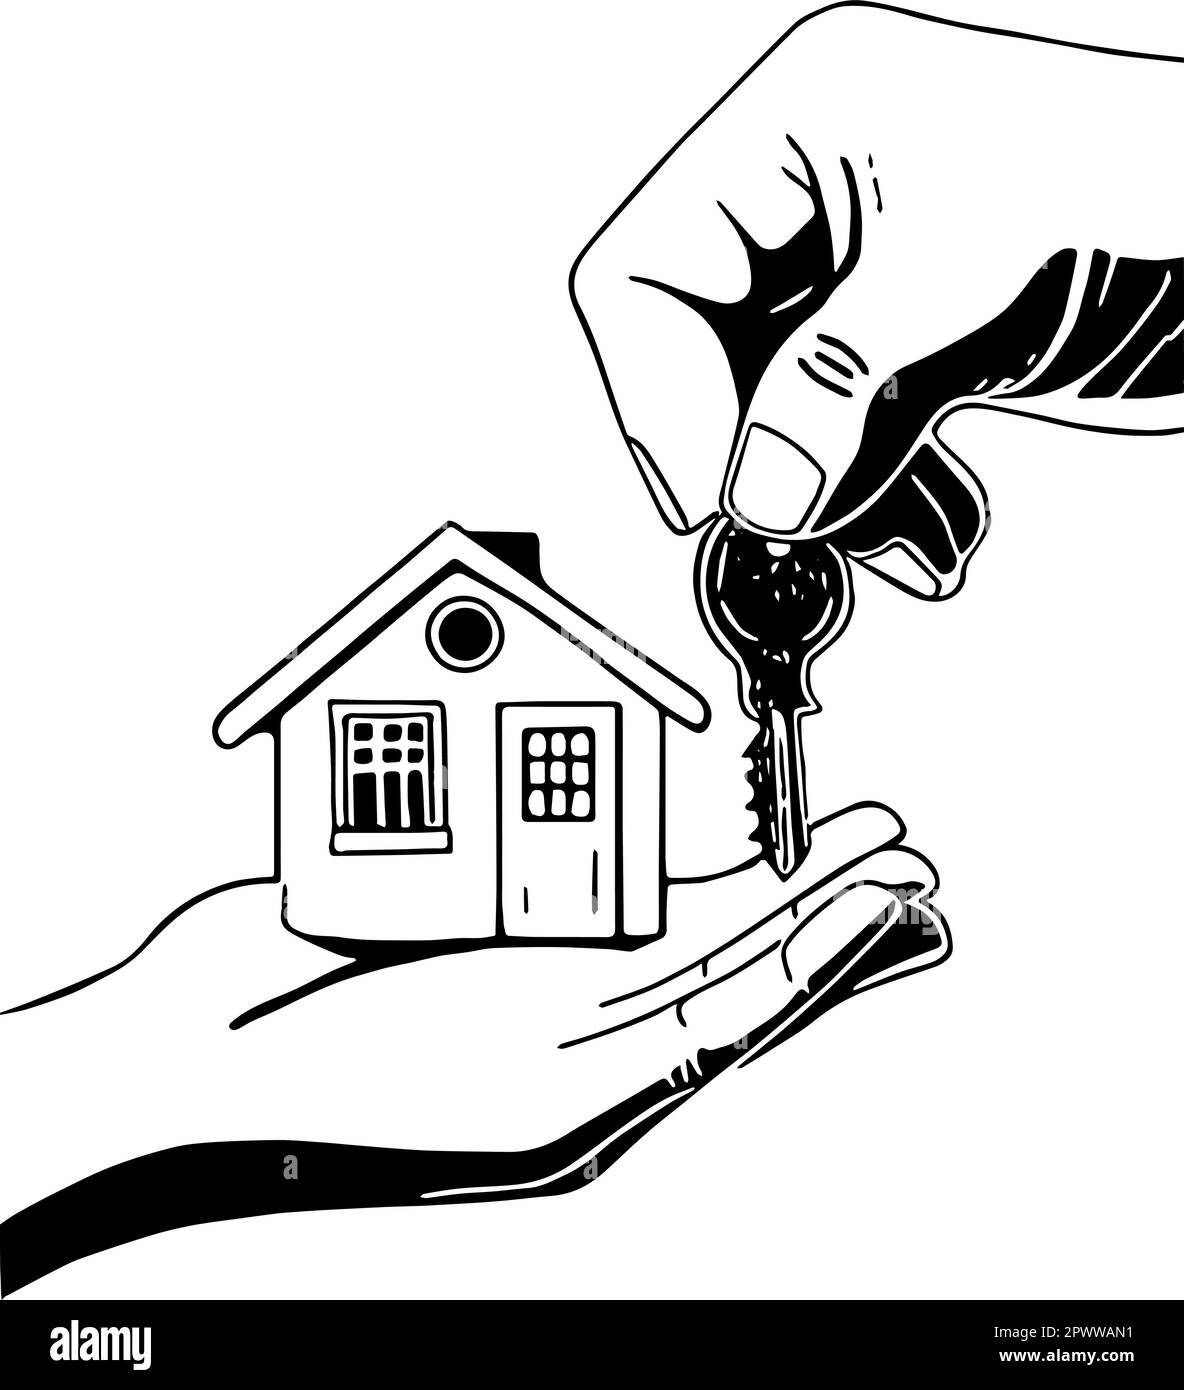 Haus in einer Hand, der Schlüssel wird übergeben. Symbol für den Kauf eines Hauses oder die Miete eines Hauses. Vektor aus Konturen. Stock Vektor